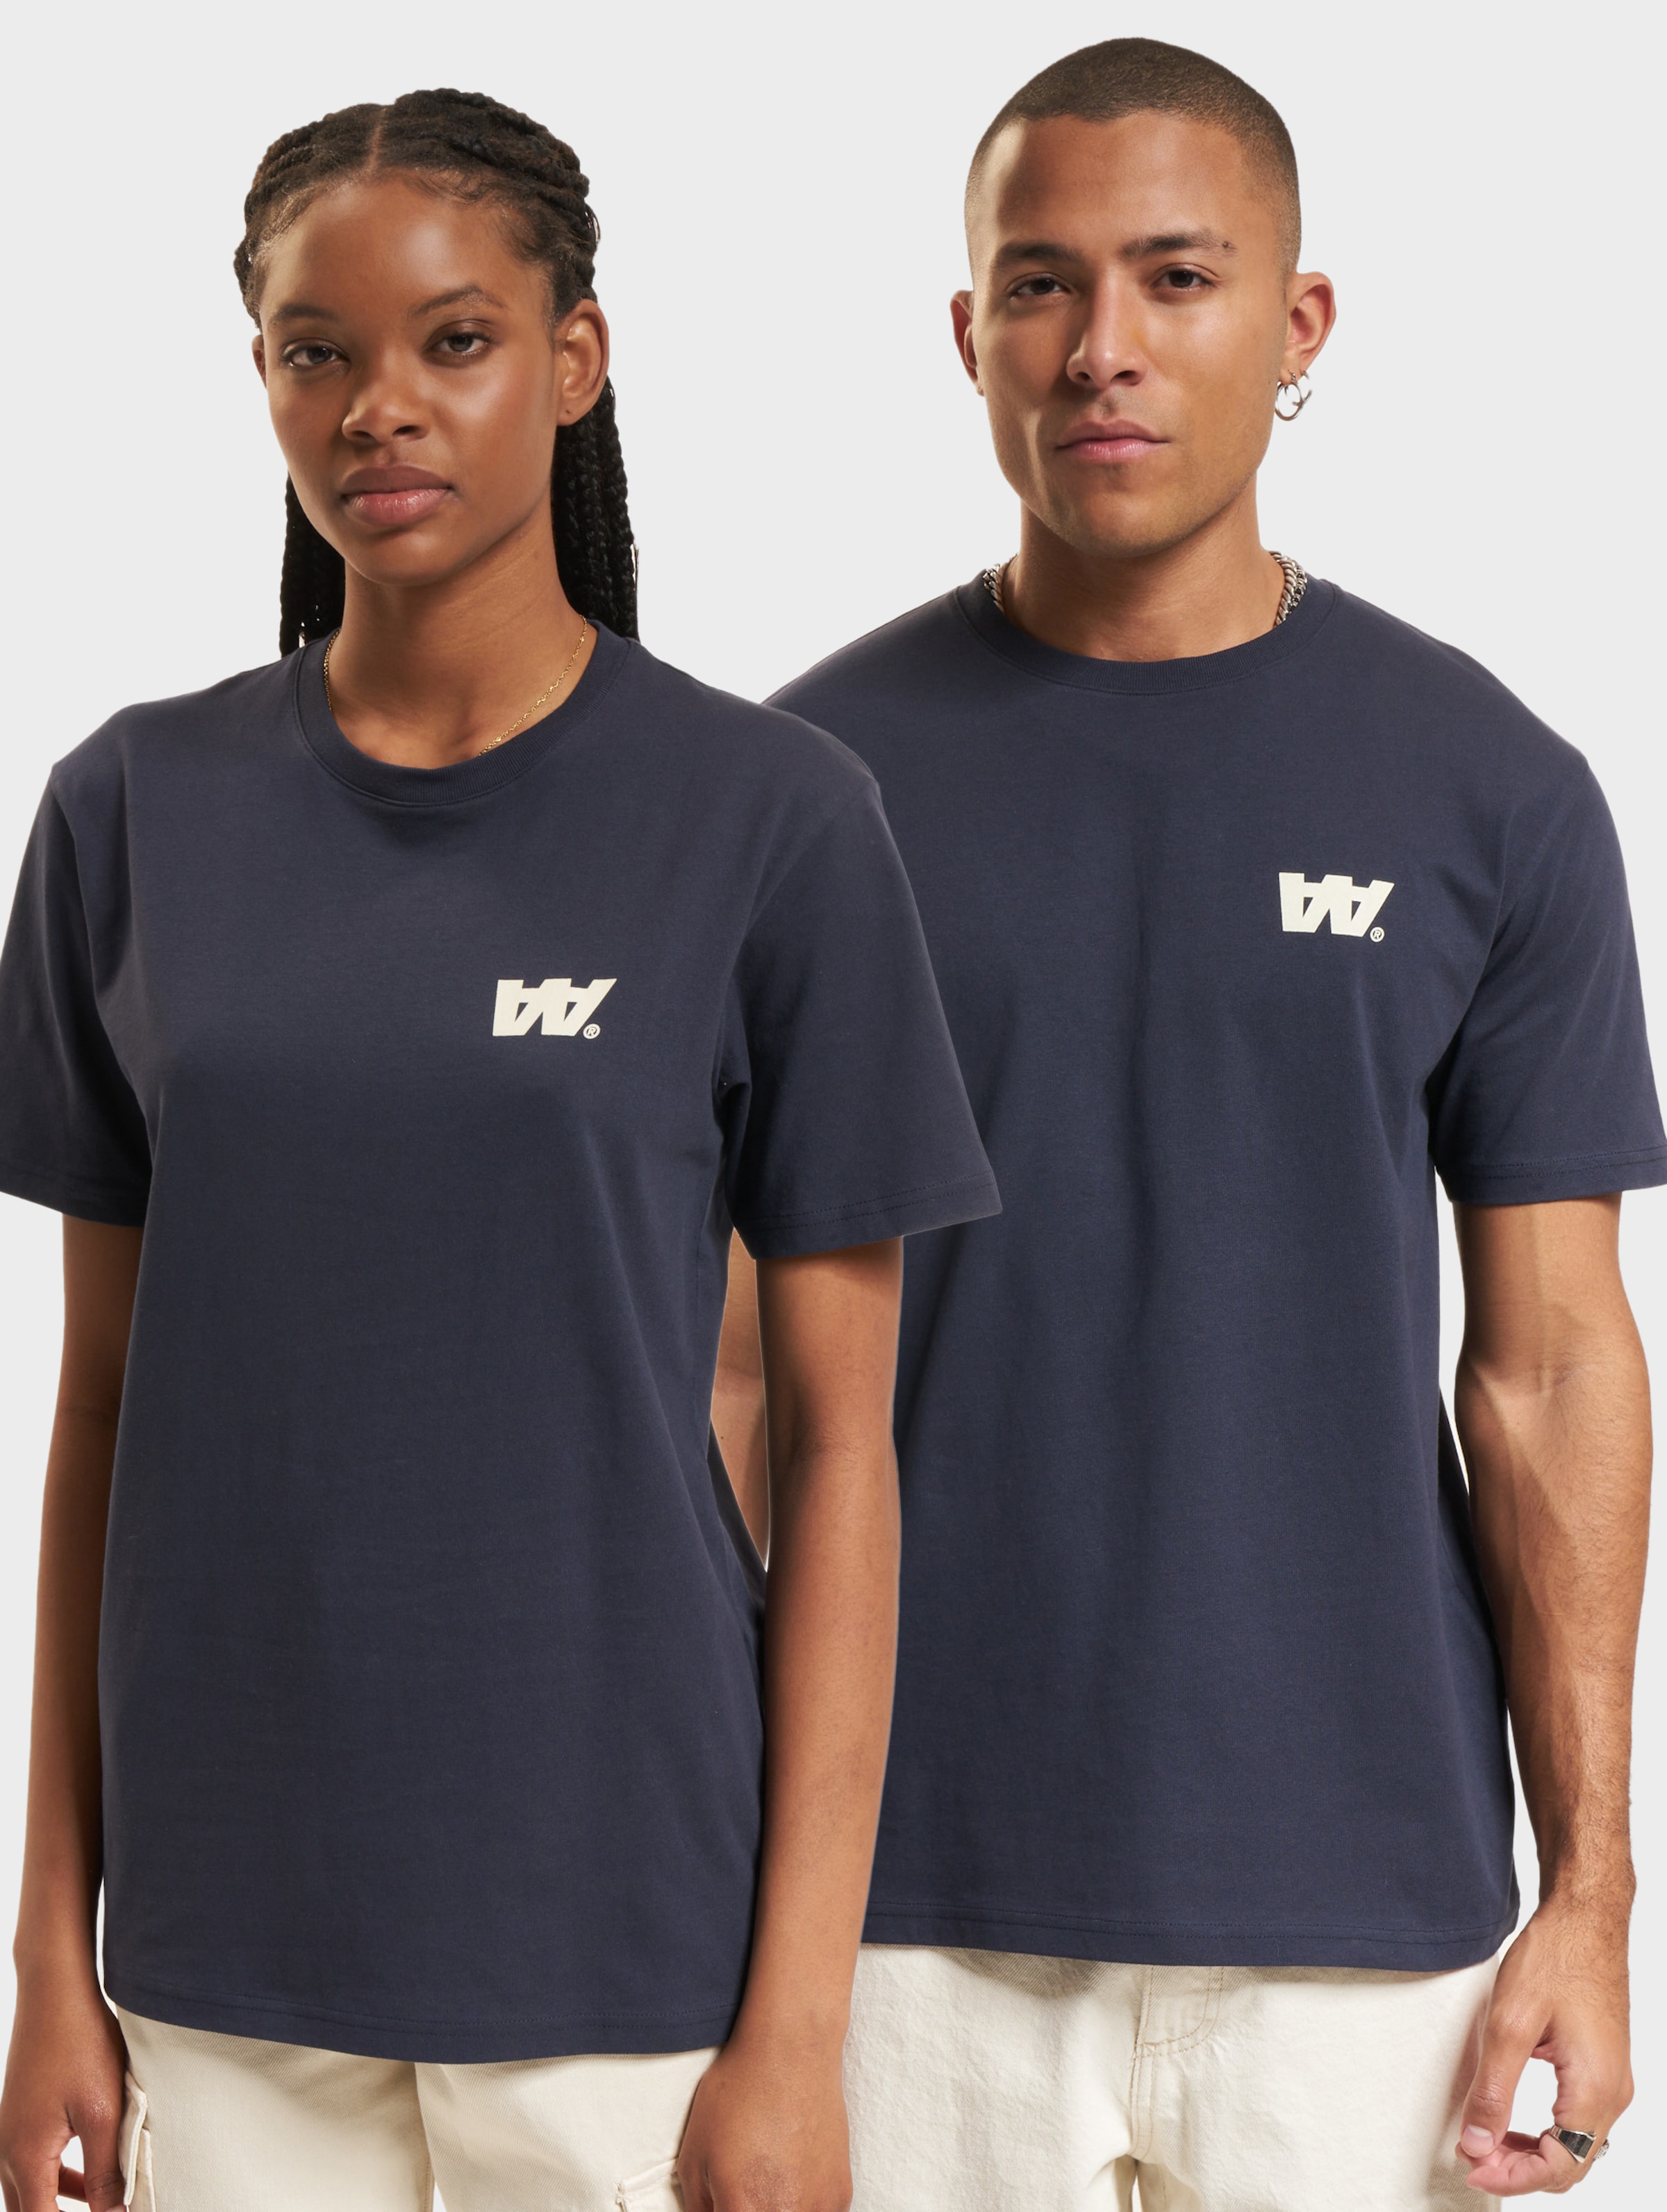 Wood Ace Letter T-Shirt Frauen,Männer,Unisex op kleur blauw, Maat S